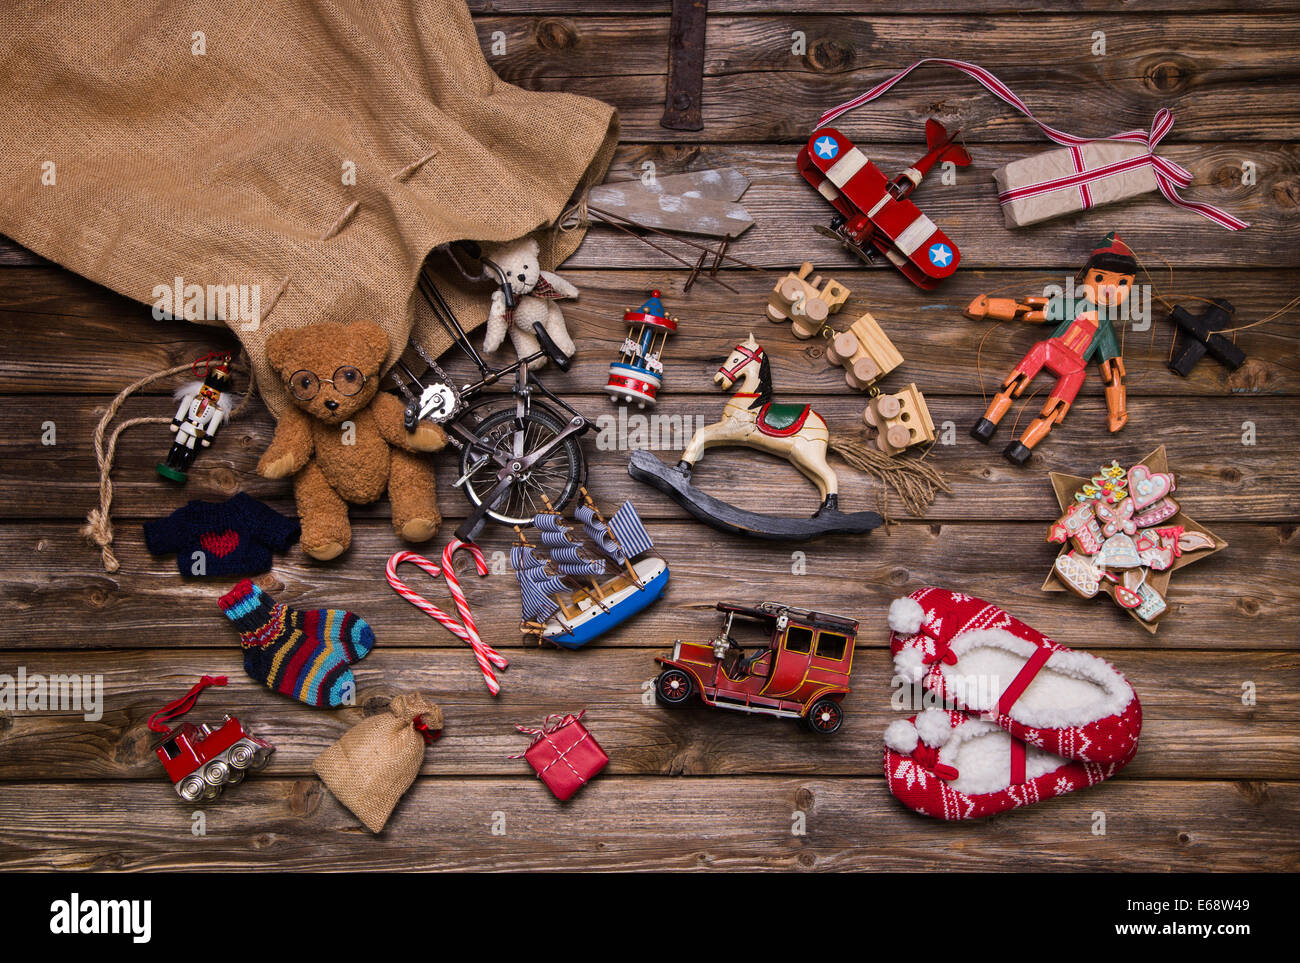 Weihnachten-Erinnerungen in der Kindheit: altes Zinn und verwendet Spielzeug auf hölzernen Hintergrund für Geschenke. Stockfoto